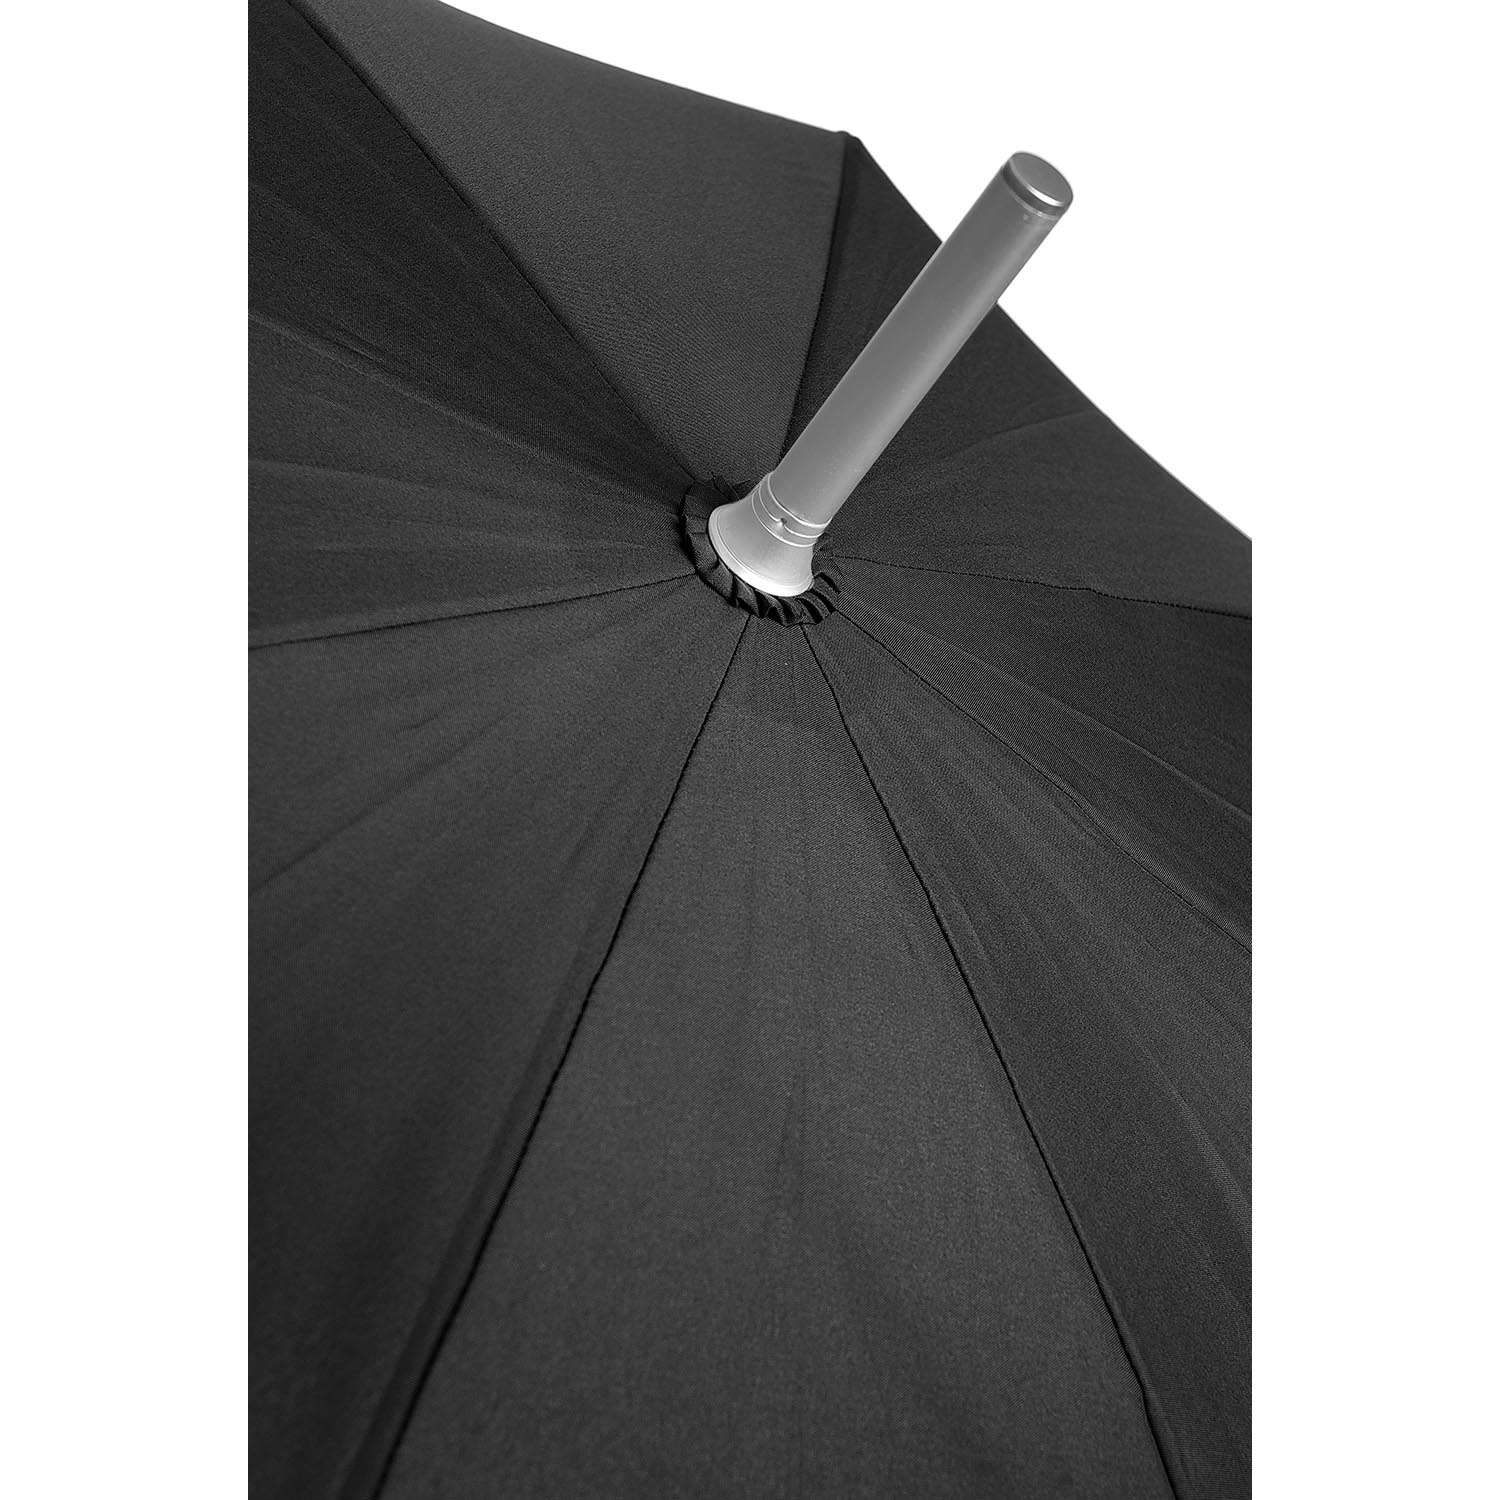 ALU DROP - Baston Şemsiye - Otomatik Açılır SF81-002-SF000*09